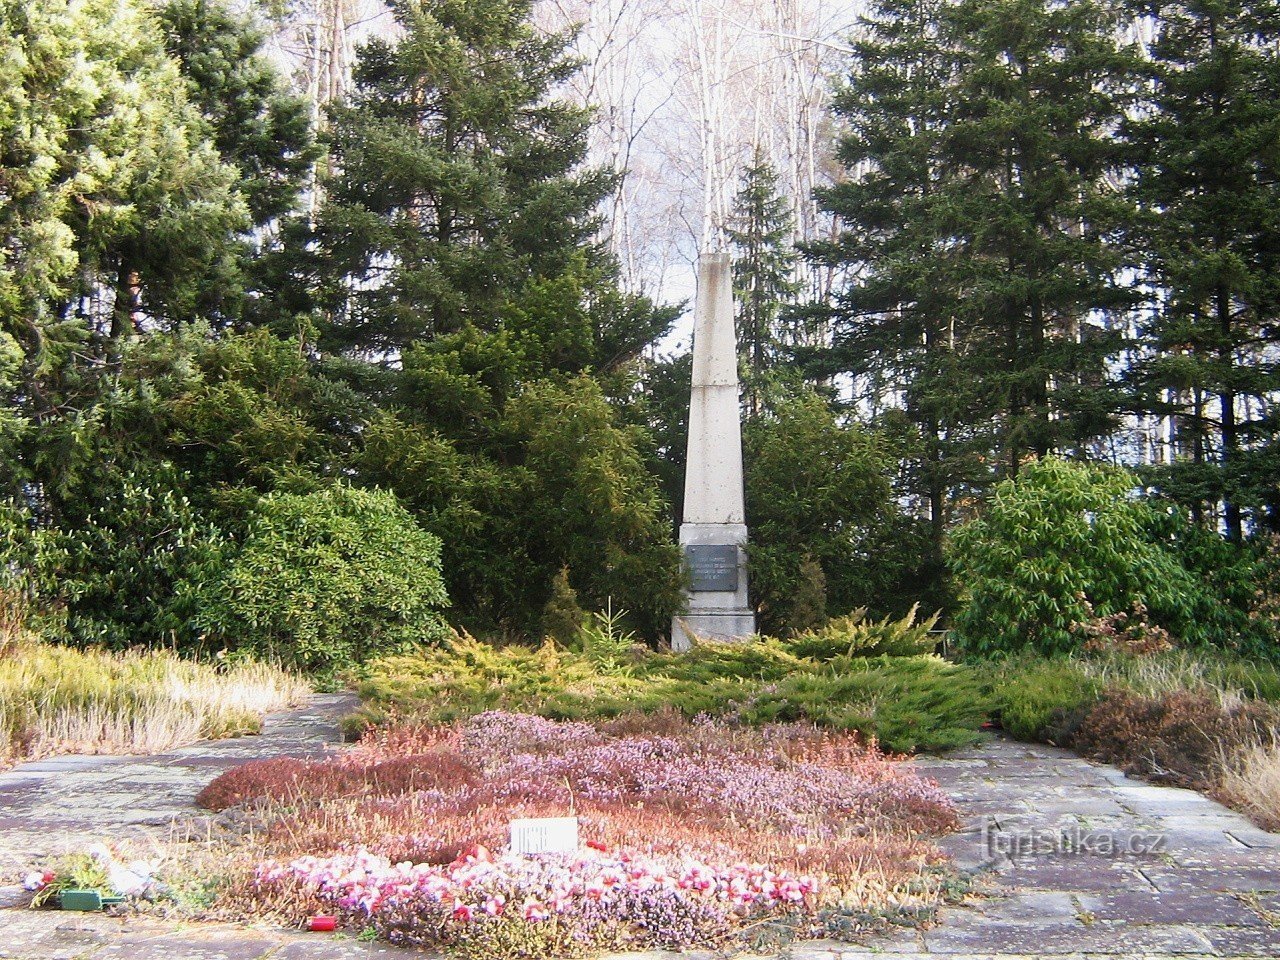 Masowy grób w pobliżu Netřebic